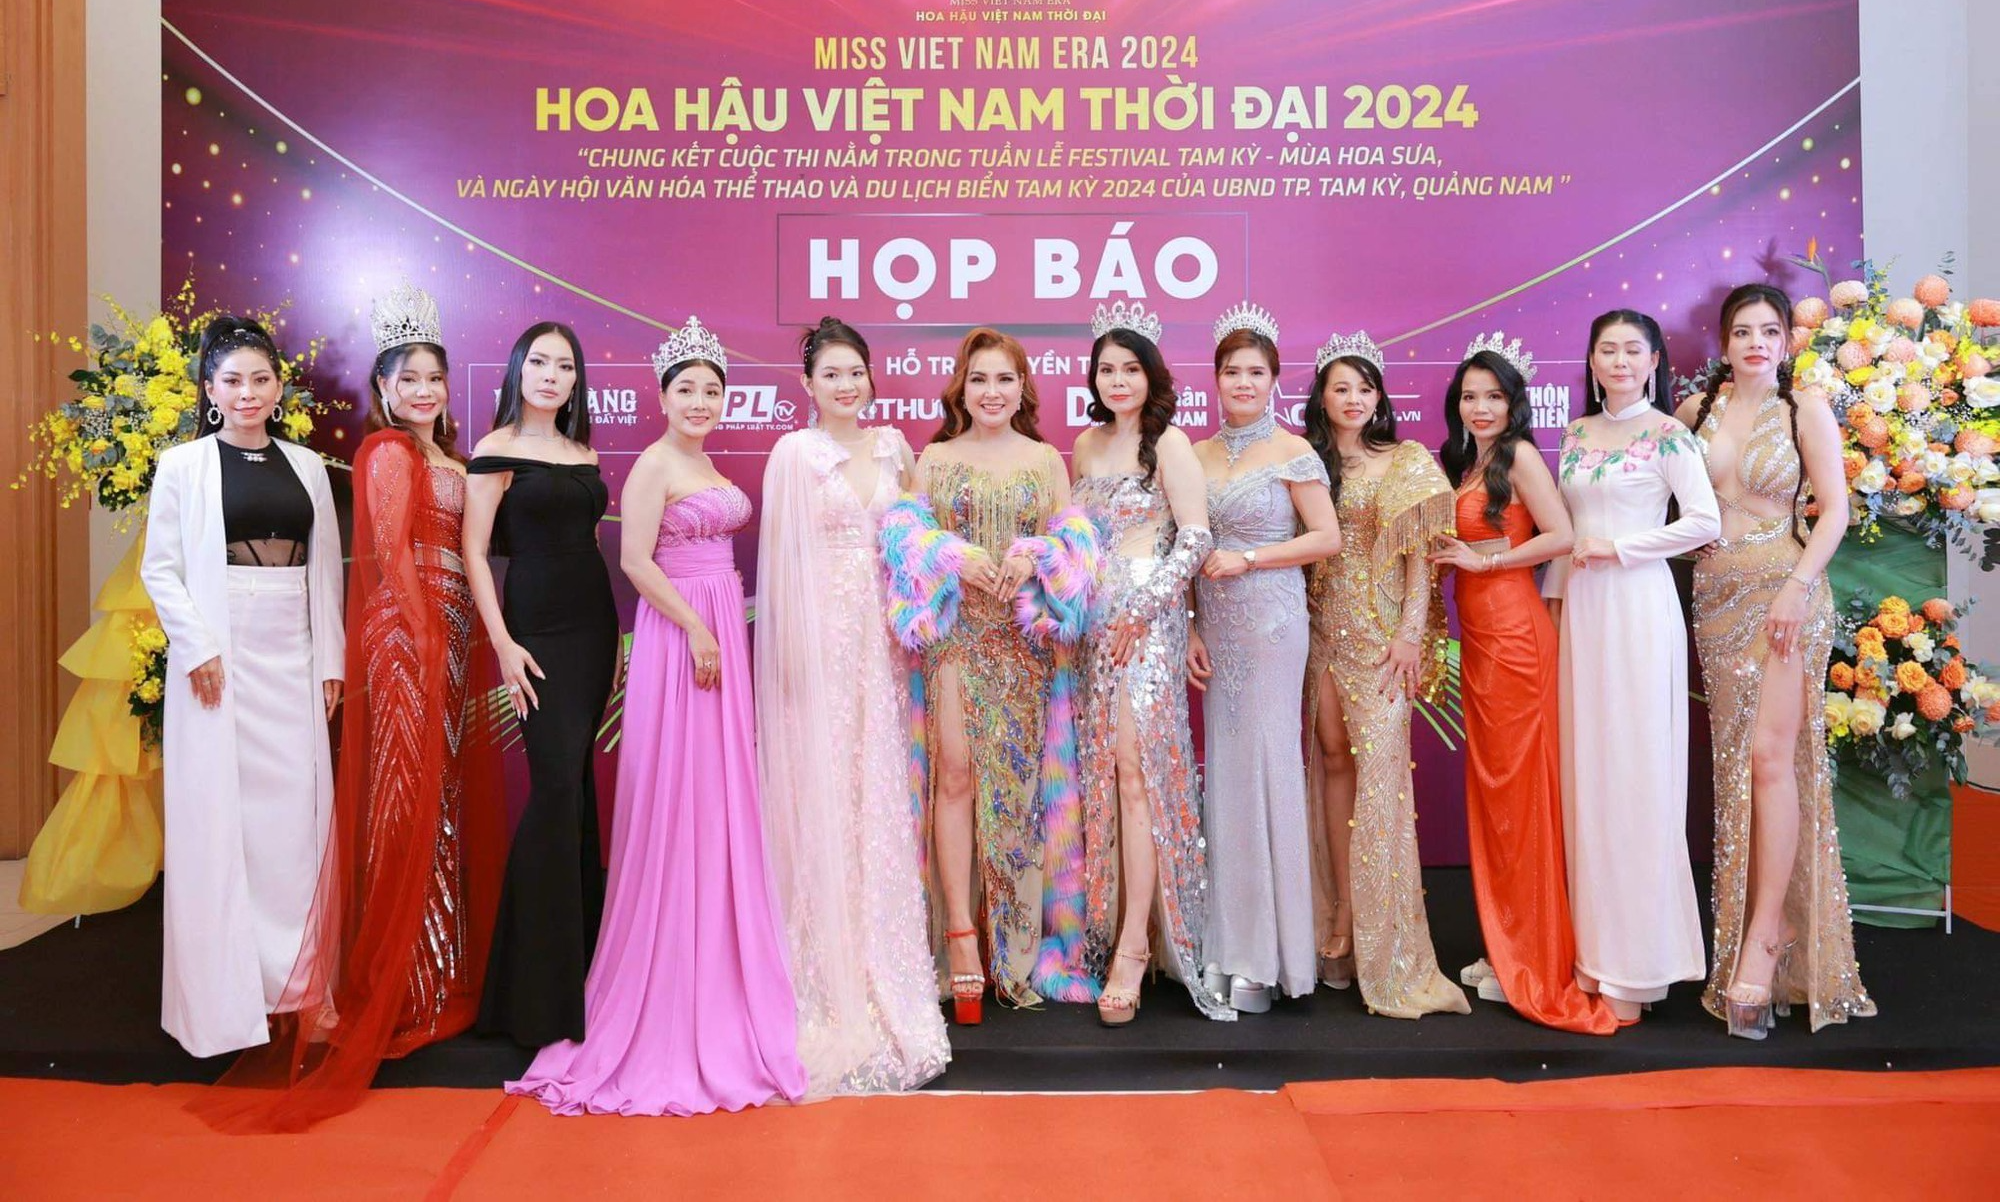 Danh ca Ngọc Sơn làm trưởng ban giám khảo cuộc thi Hoa hậu Việt Nam thời đại 2024- Ảnh 1.